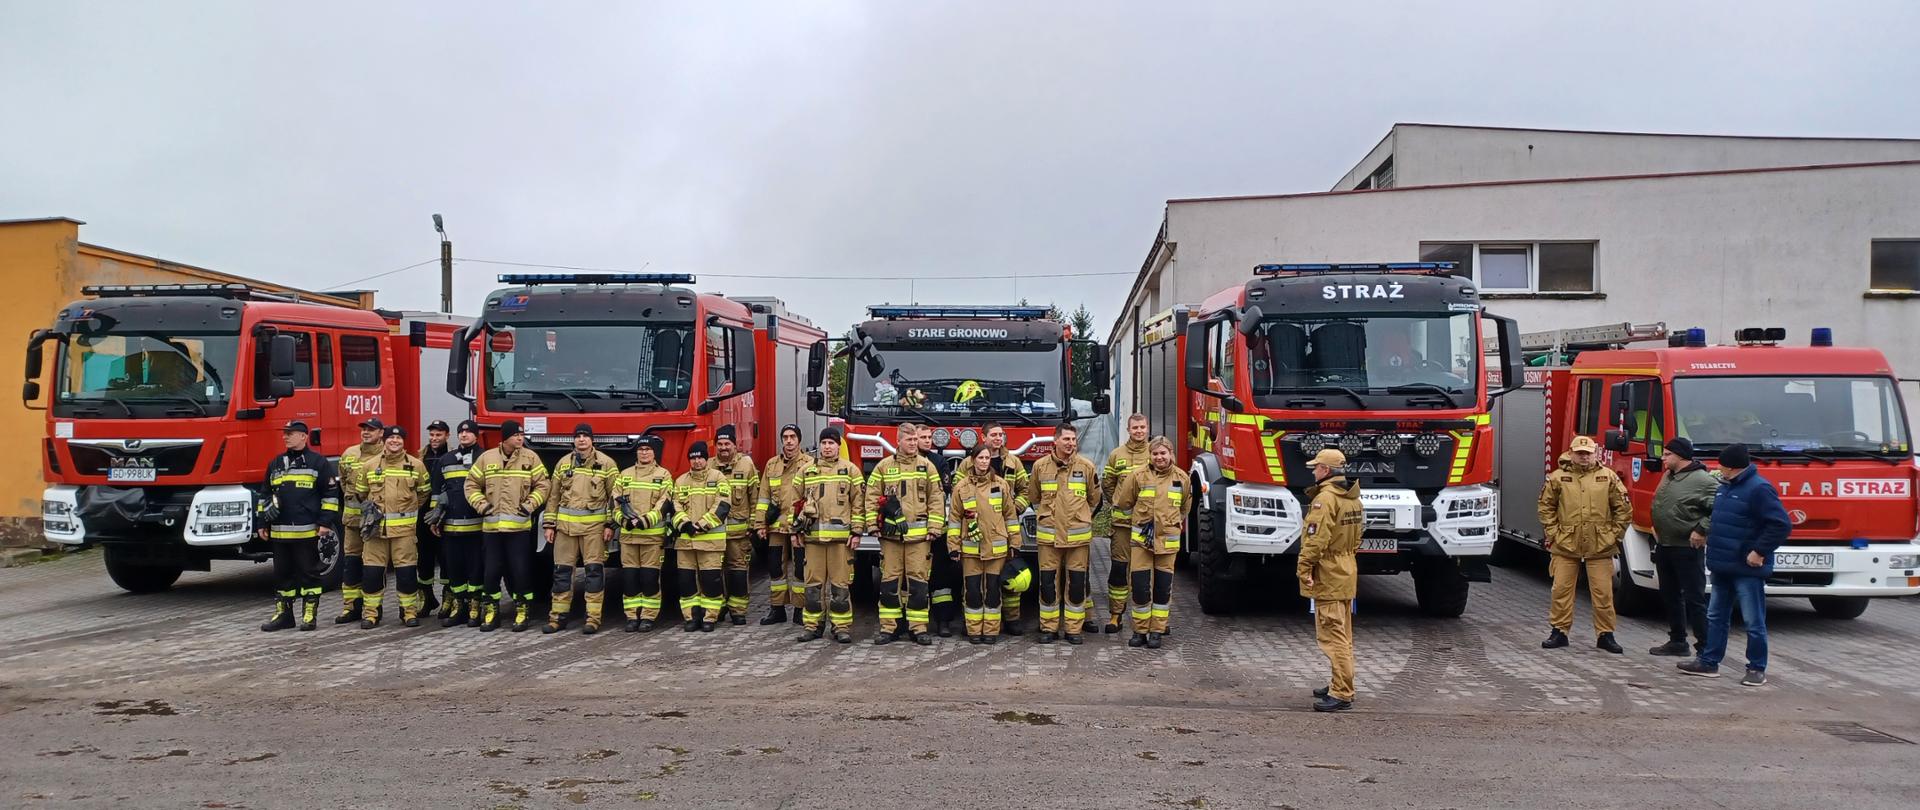 Zdjęcie przedstawia strażaków stojących w dwuszeregu podczas zbiórki na terenie firmy, w tle samochody pożarnicze i budynki.